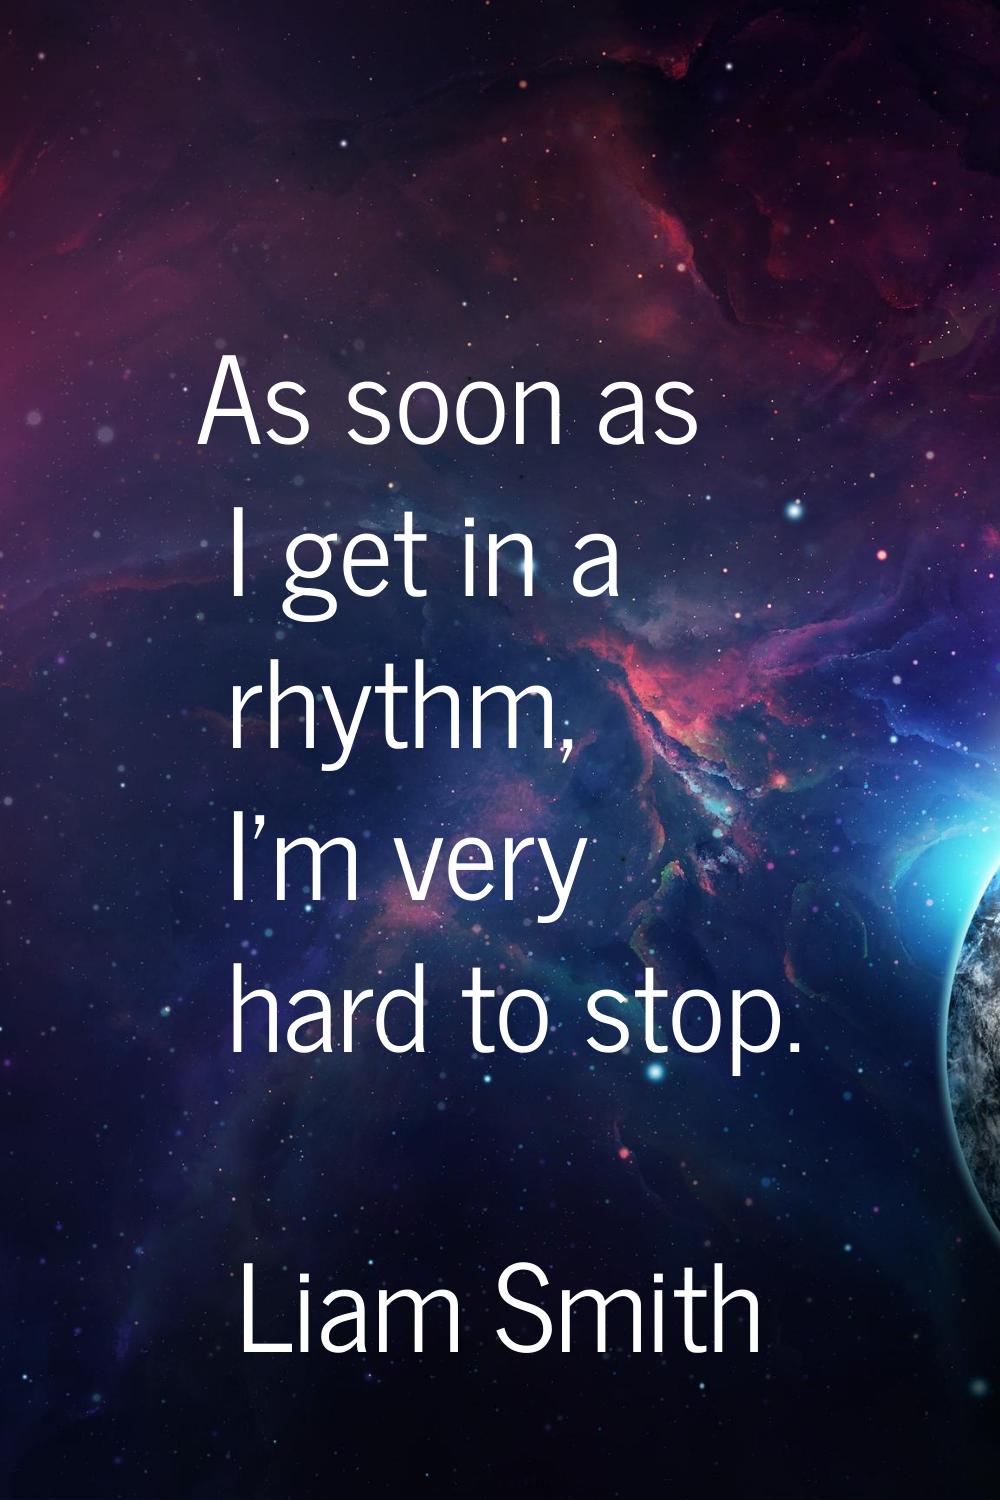 As soon as I get in a rhythm, I'm very hard to stop.